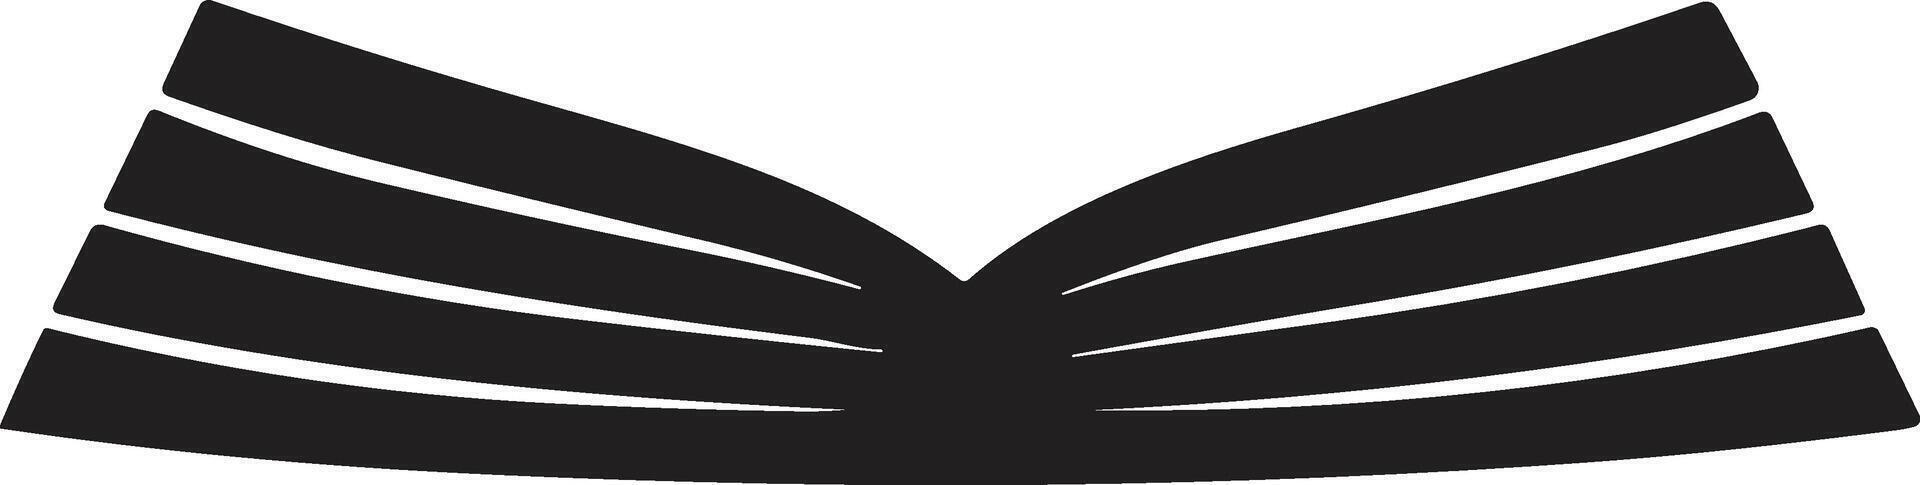 ouvert livre logo ou badge dans librairie concept dans ancien ou rétro style vecteur